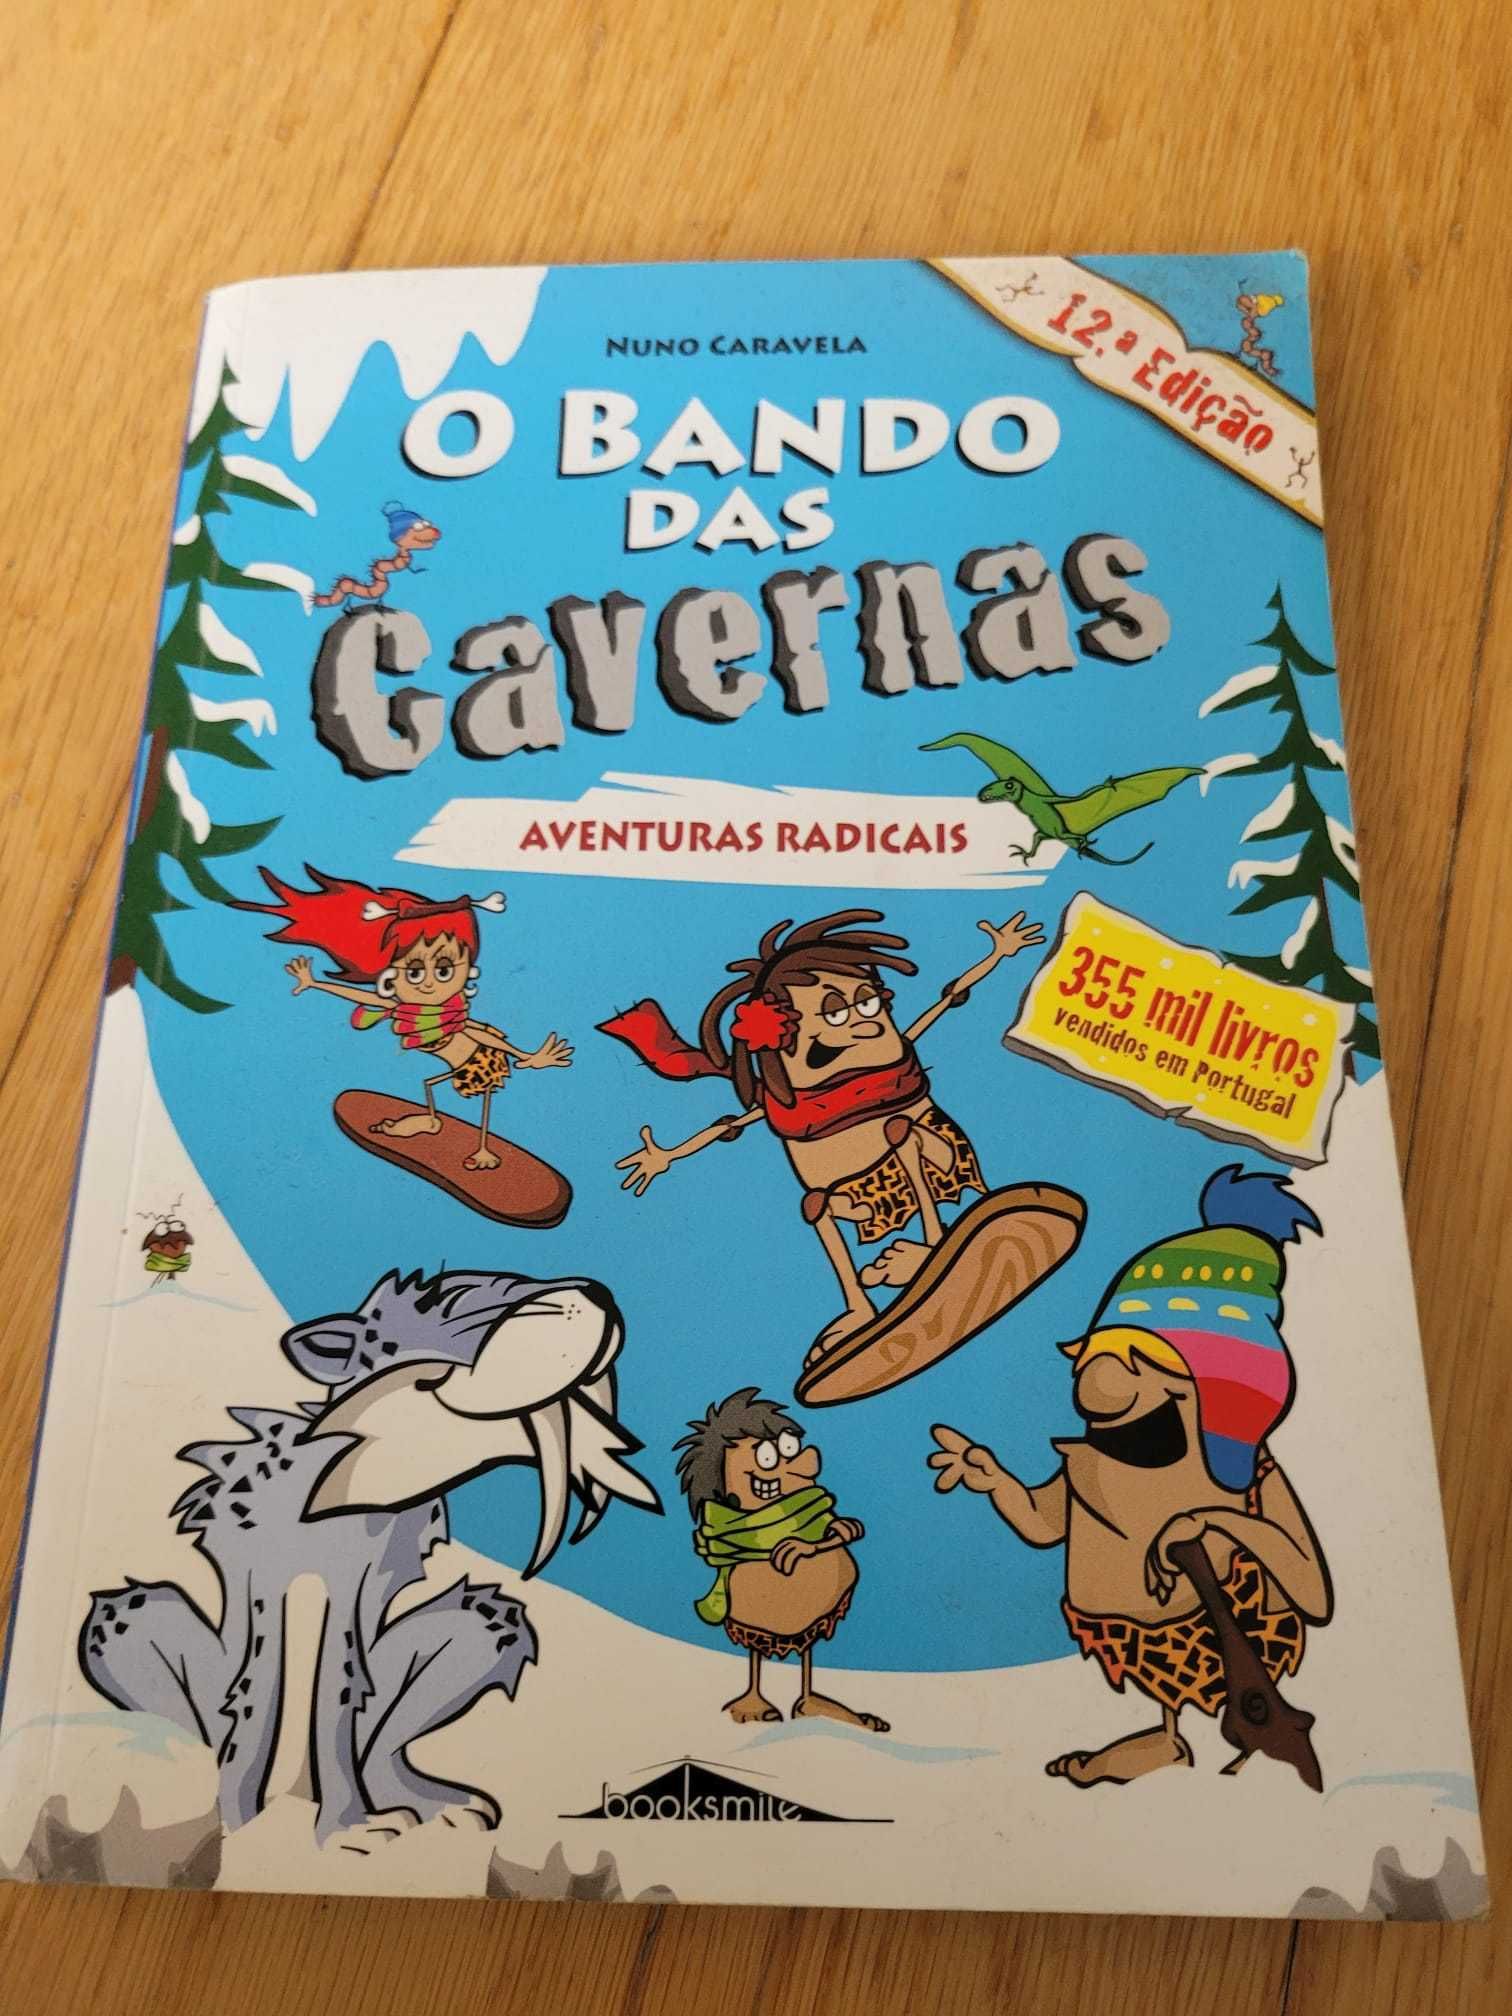 Livros da coleção do “O Bando das Cavernas” - 4 livros